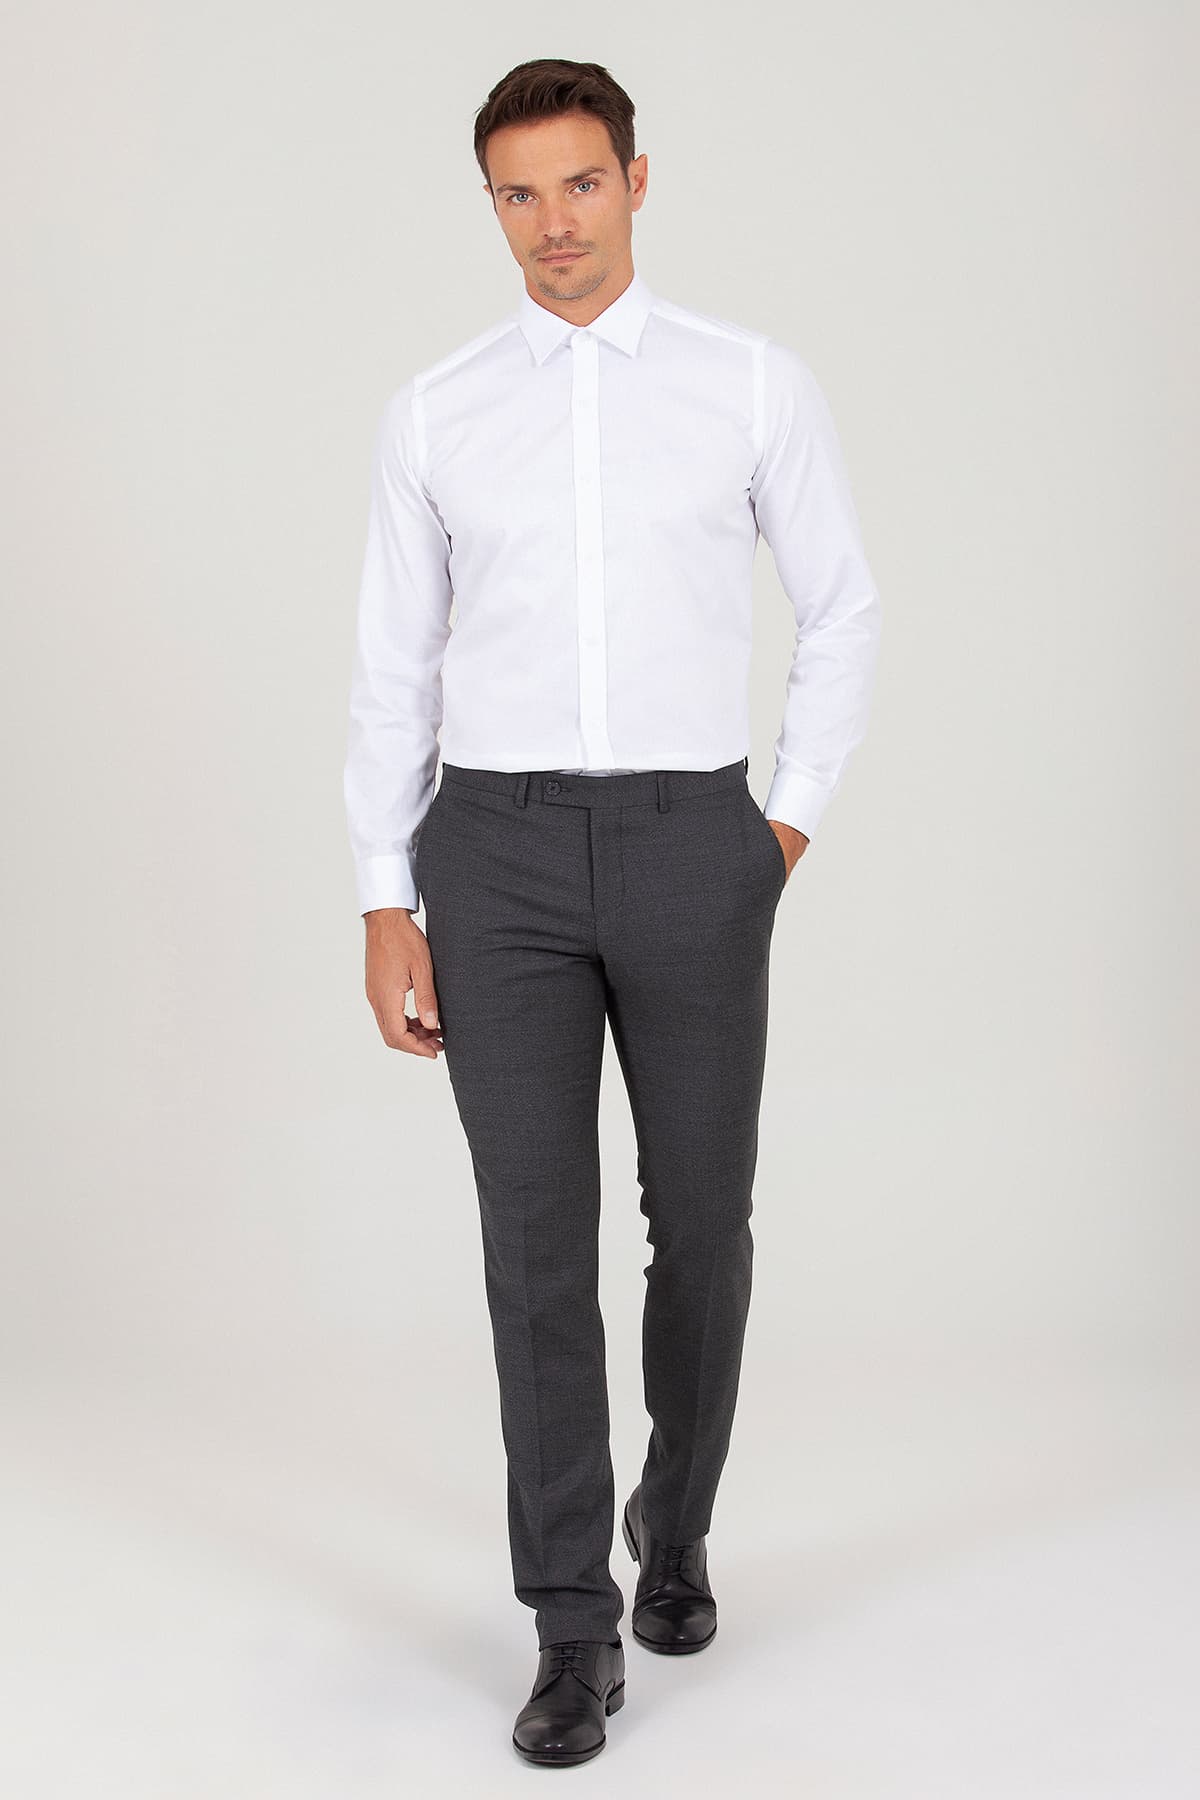 Beyaz Slim Fit Desenli 100% Pamuk Uzun Kol Spor Gömlek